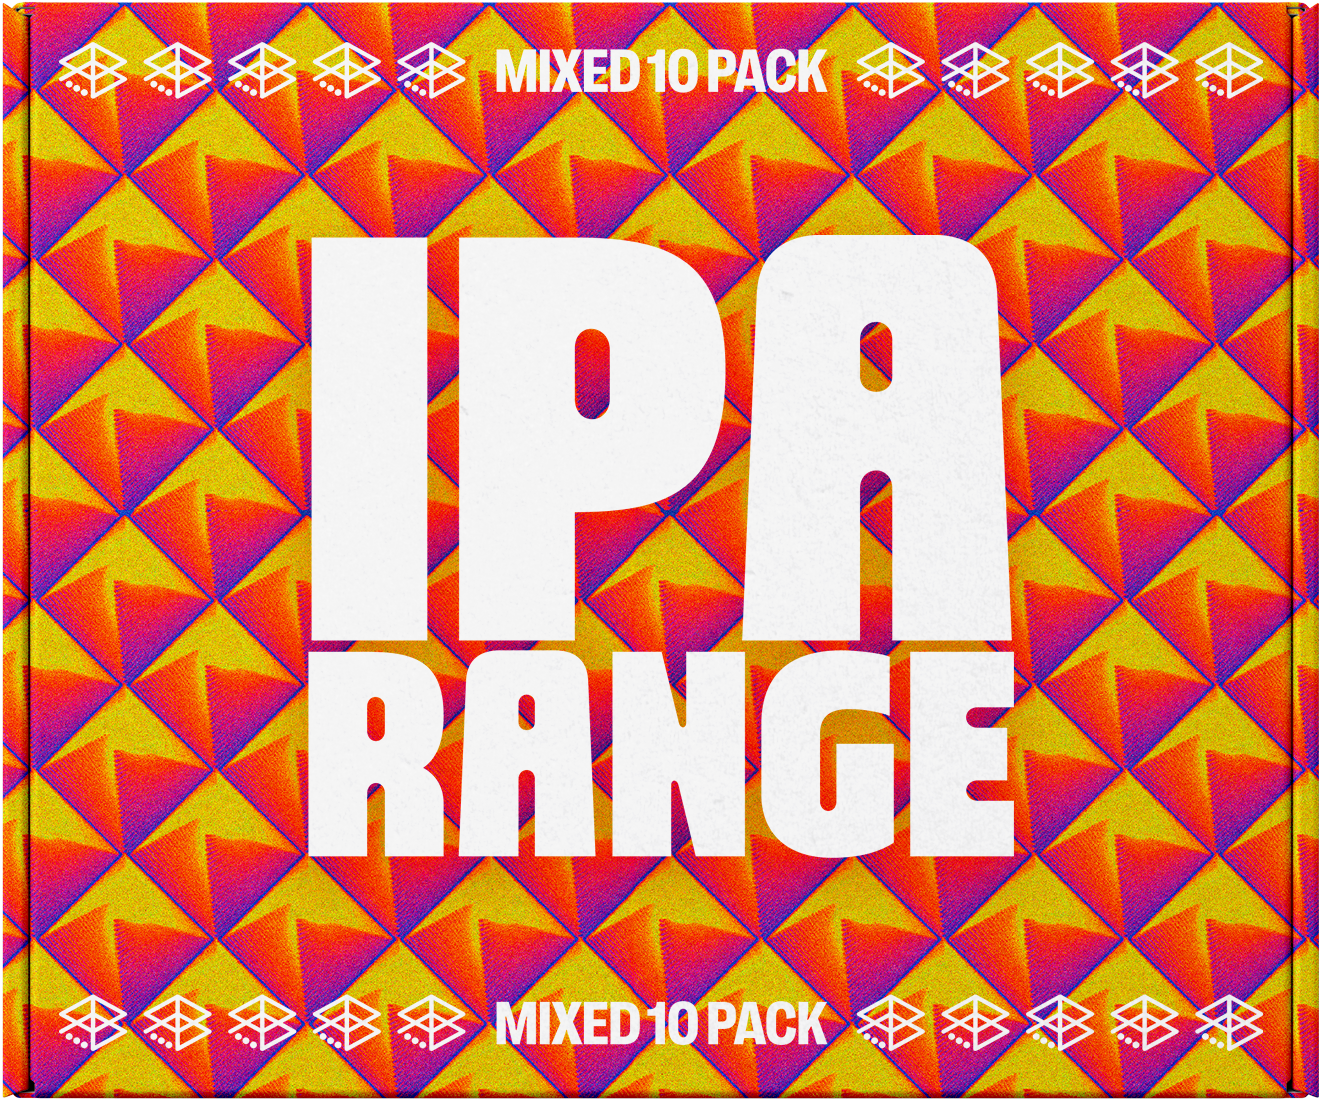 IPA Range Box - Mixed 10pk